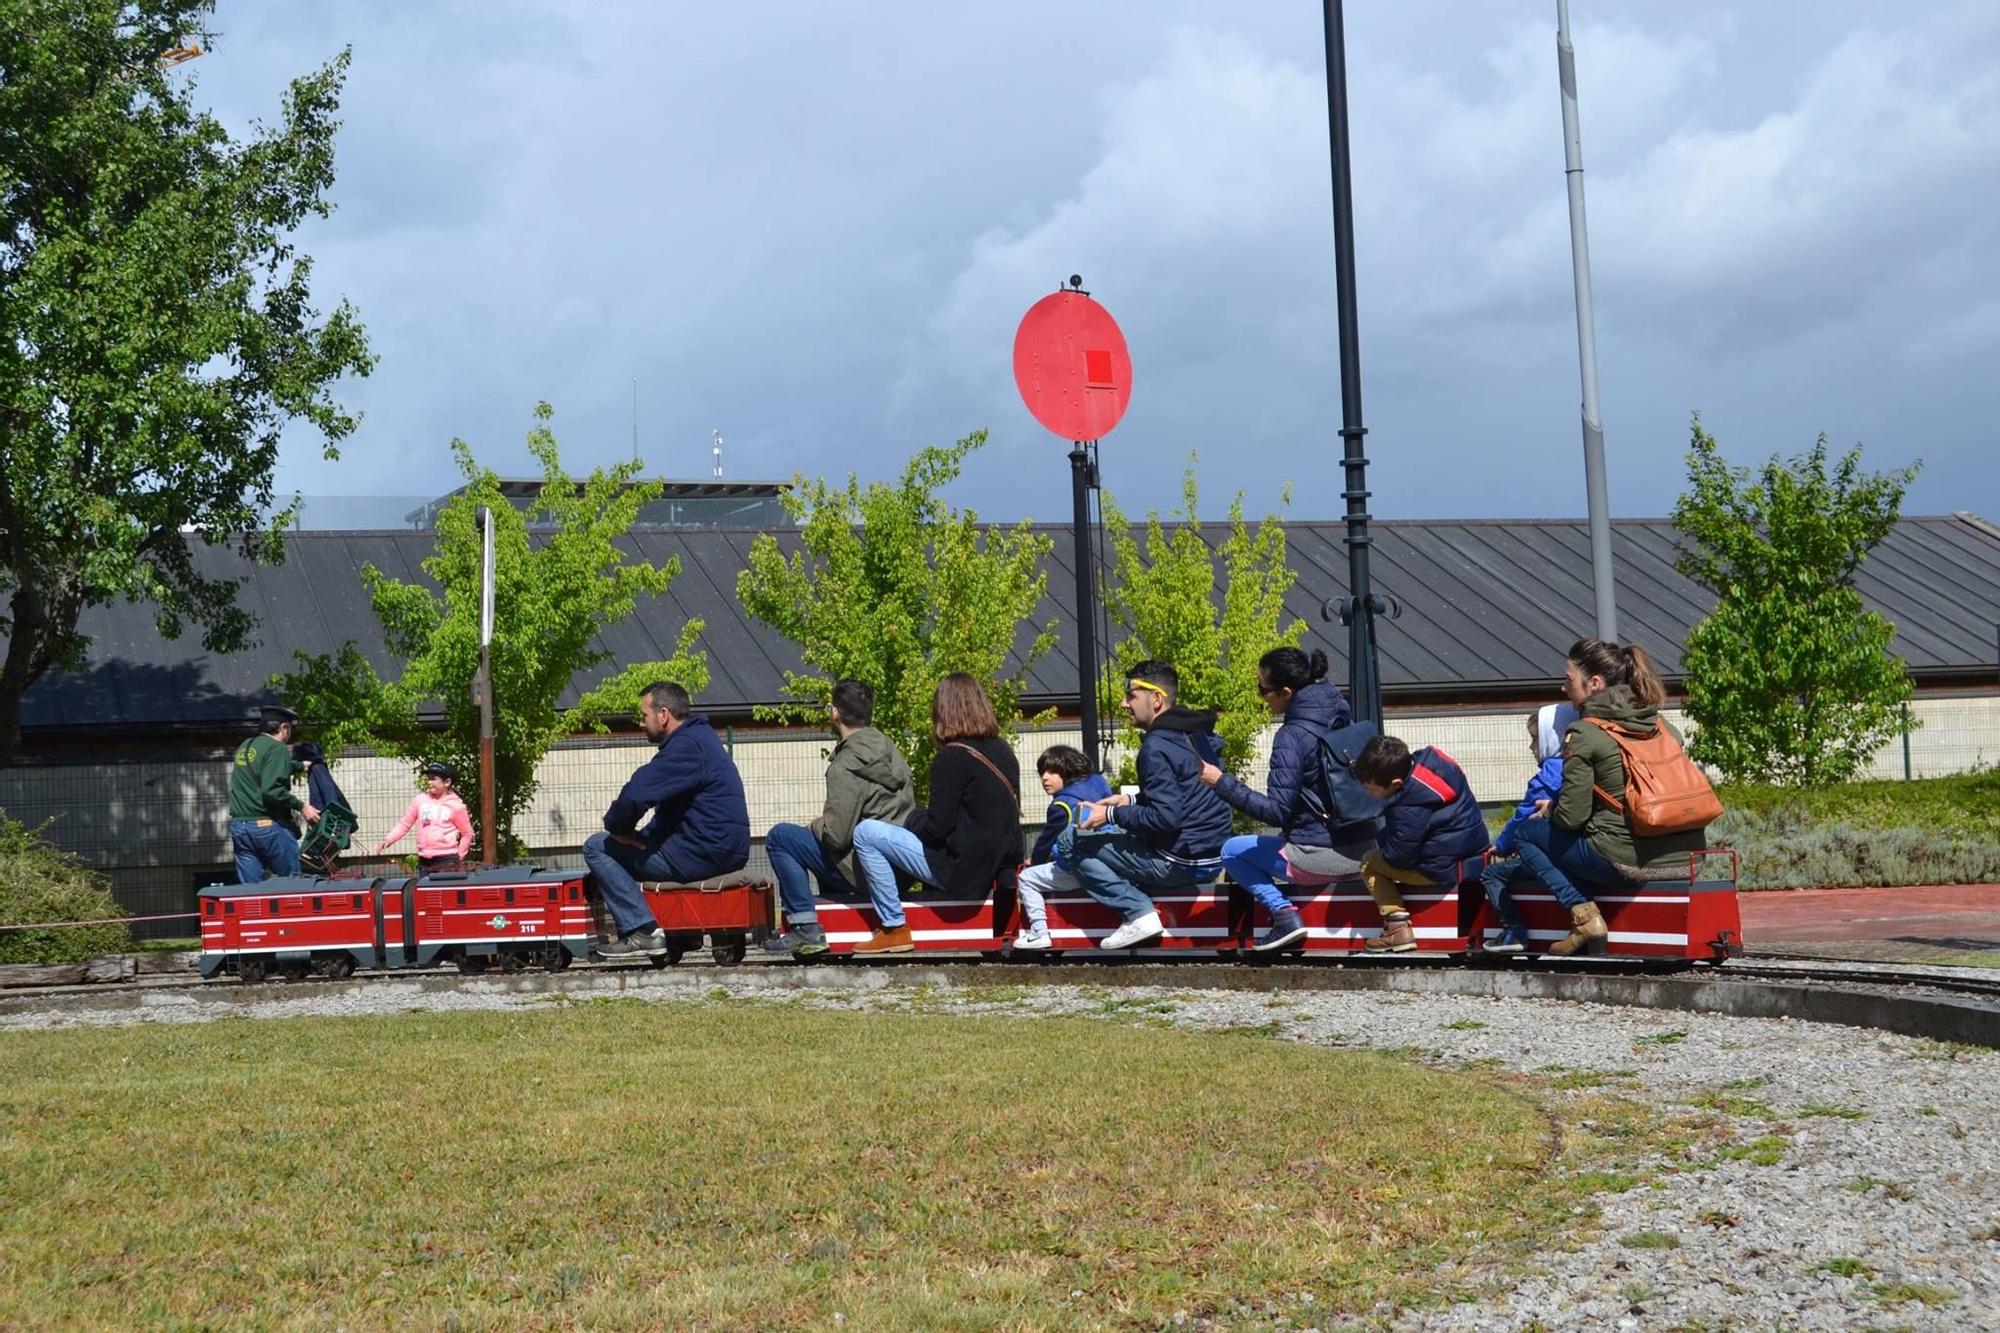 Ocio en Galicia: Parque ferroviario infantil Carrileiros